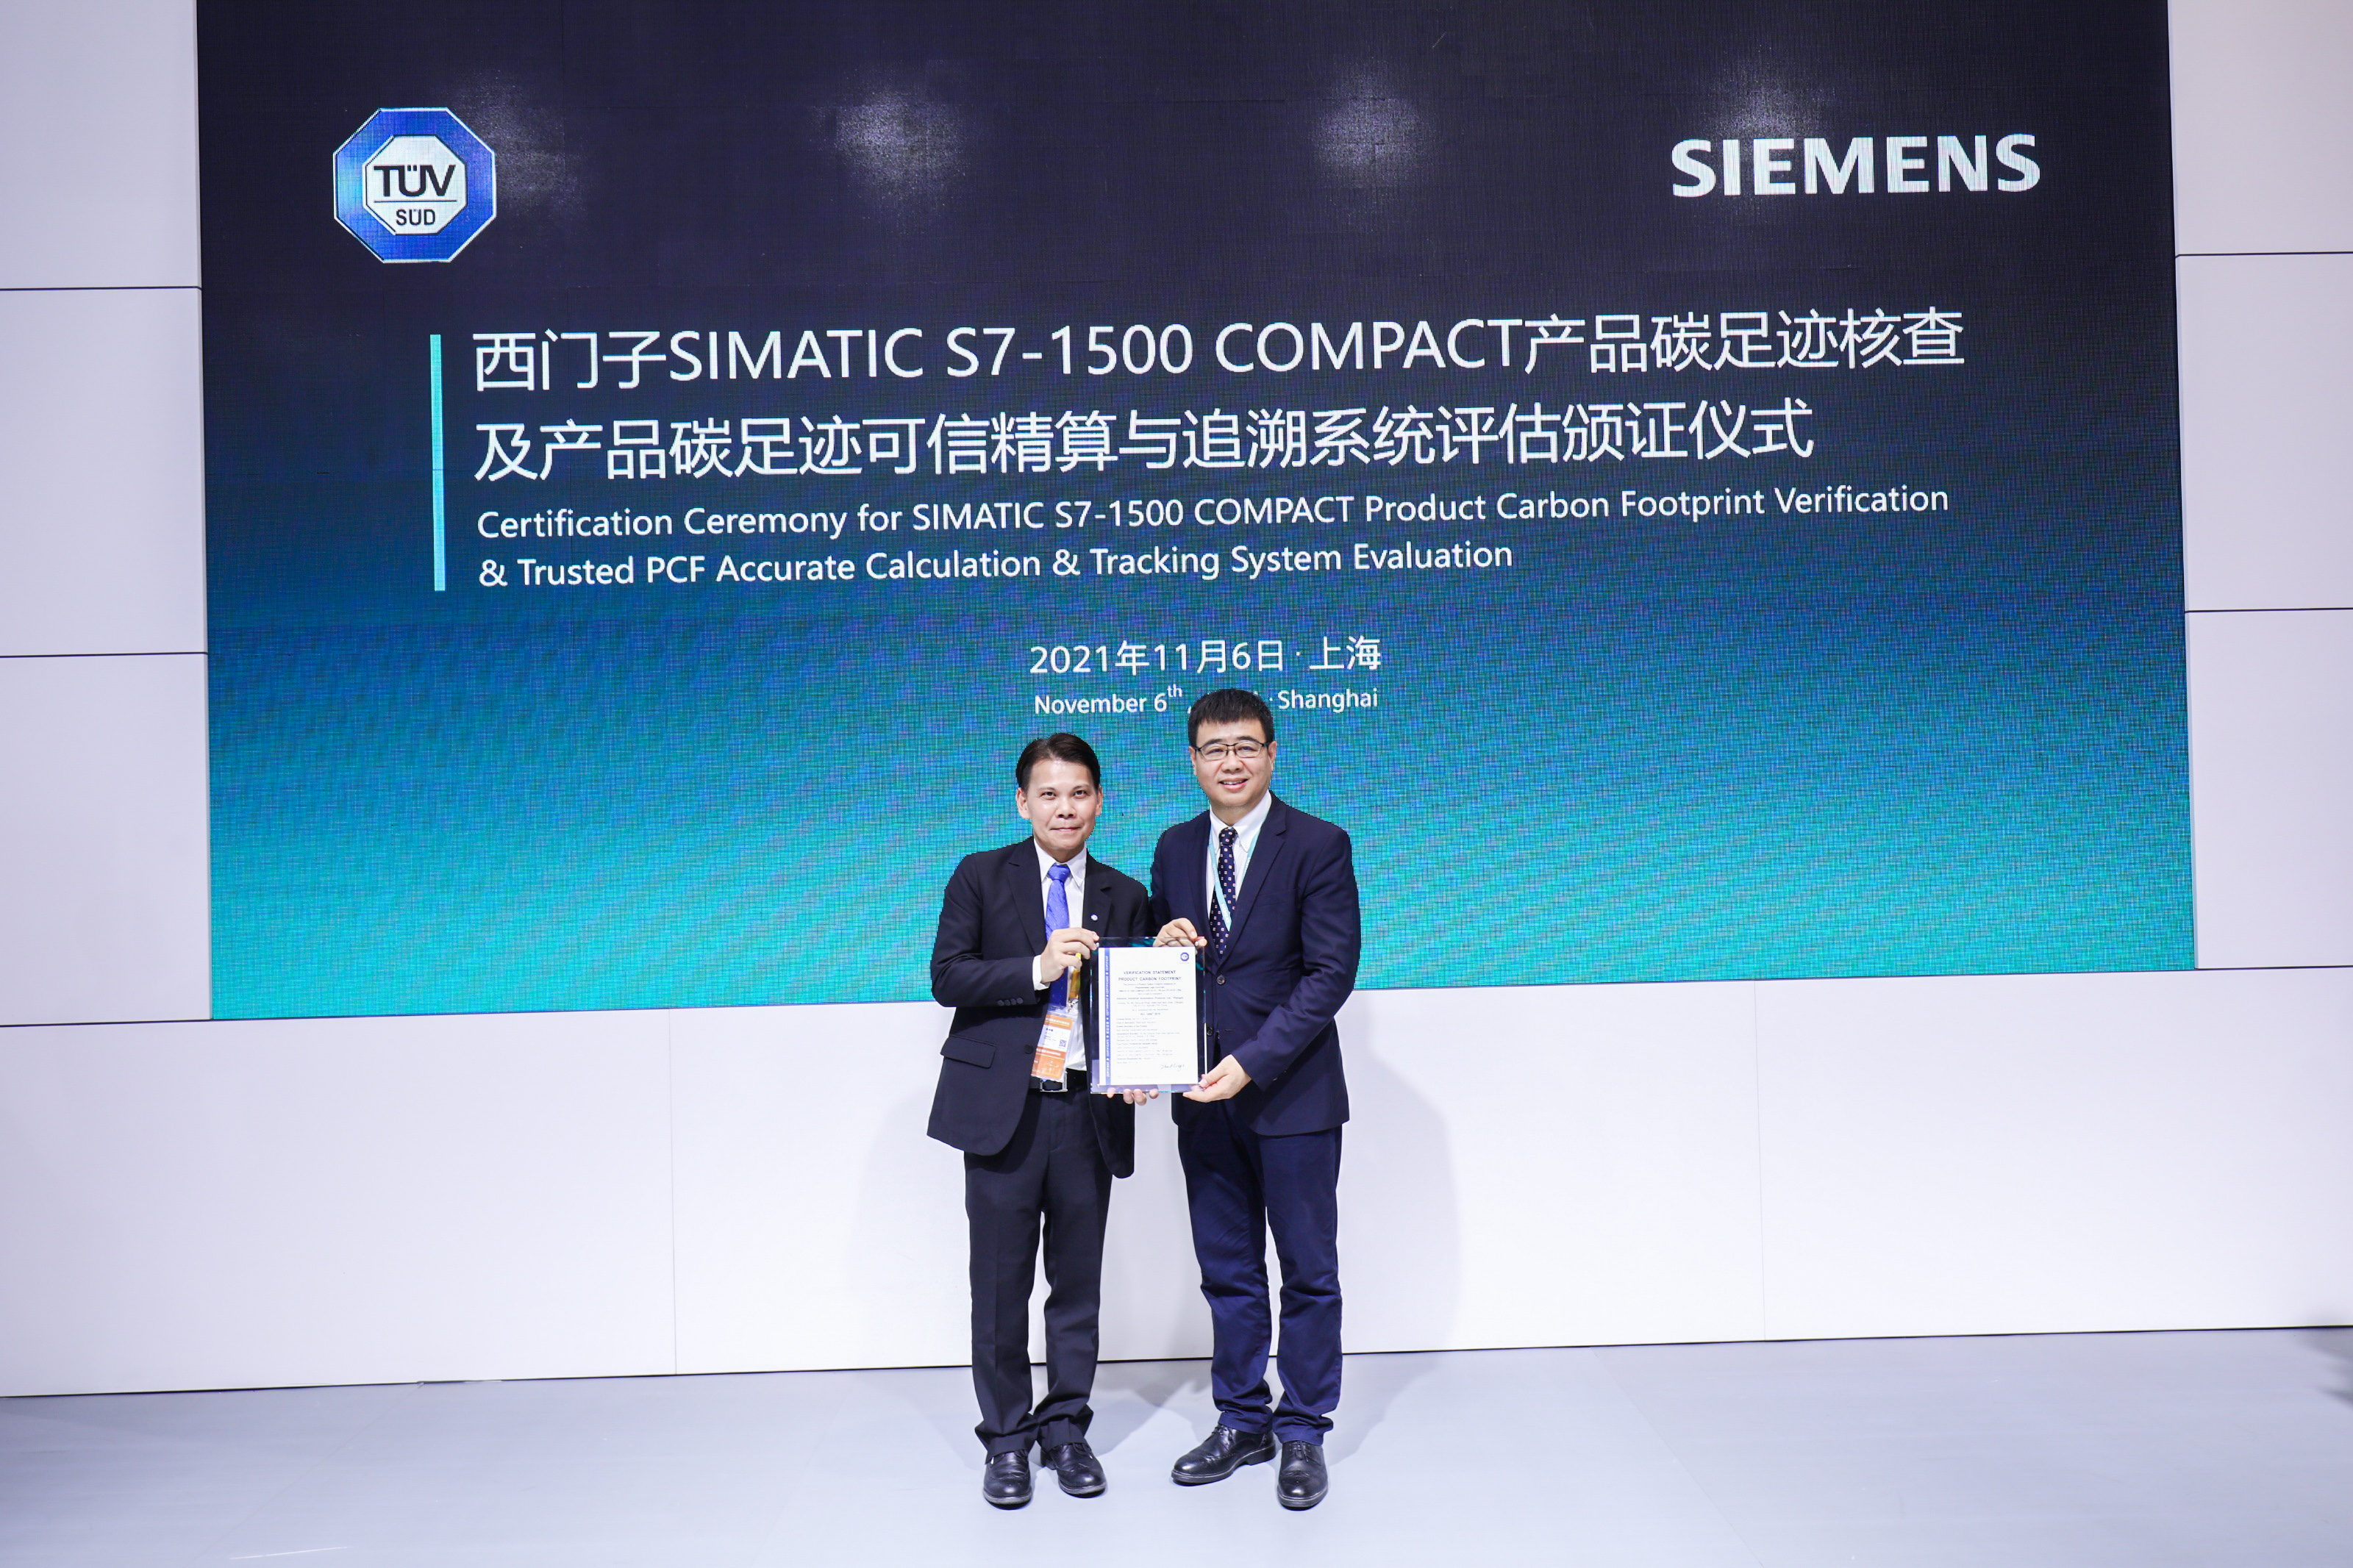 西门子SIMATIC S7-1500 COMPACT 的两款PLC产品完成碳足迹核查及产品碳足迹可信精算与追溯系统评估认证仪式